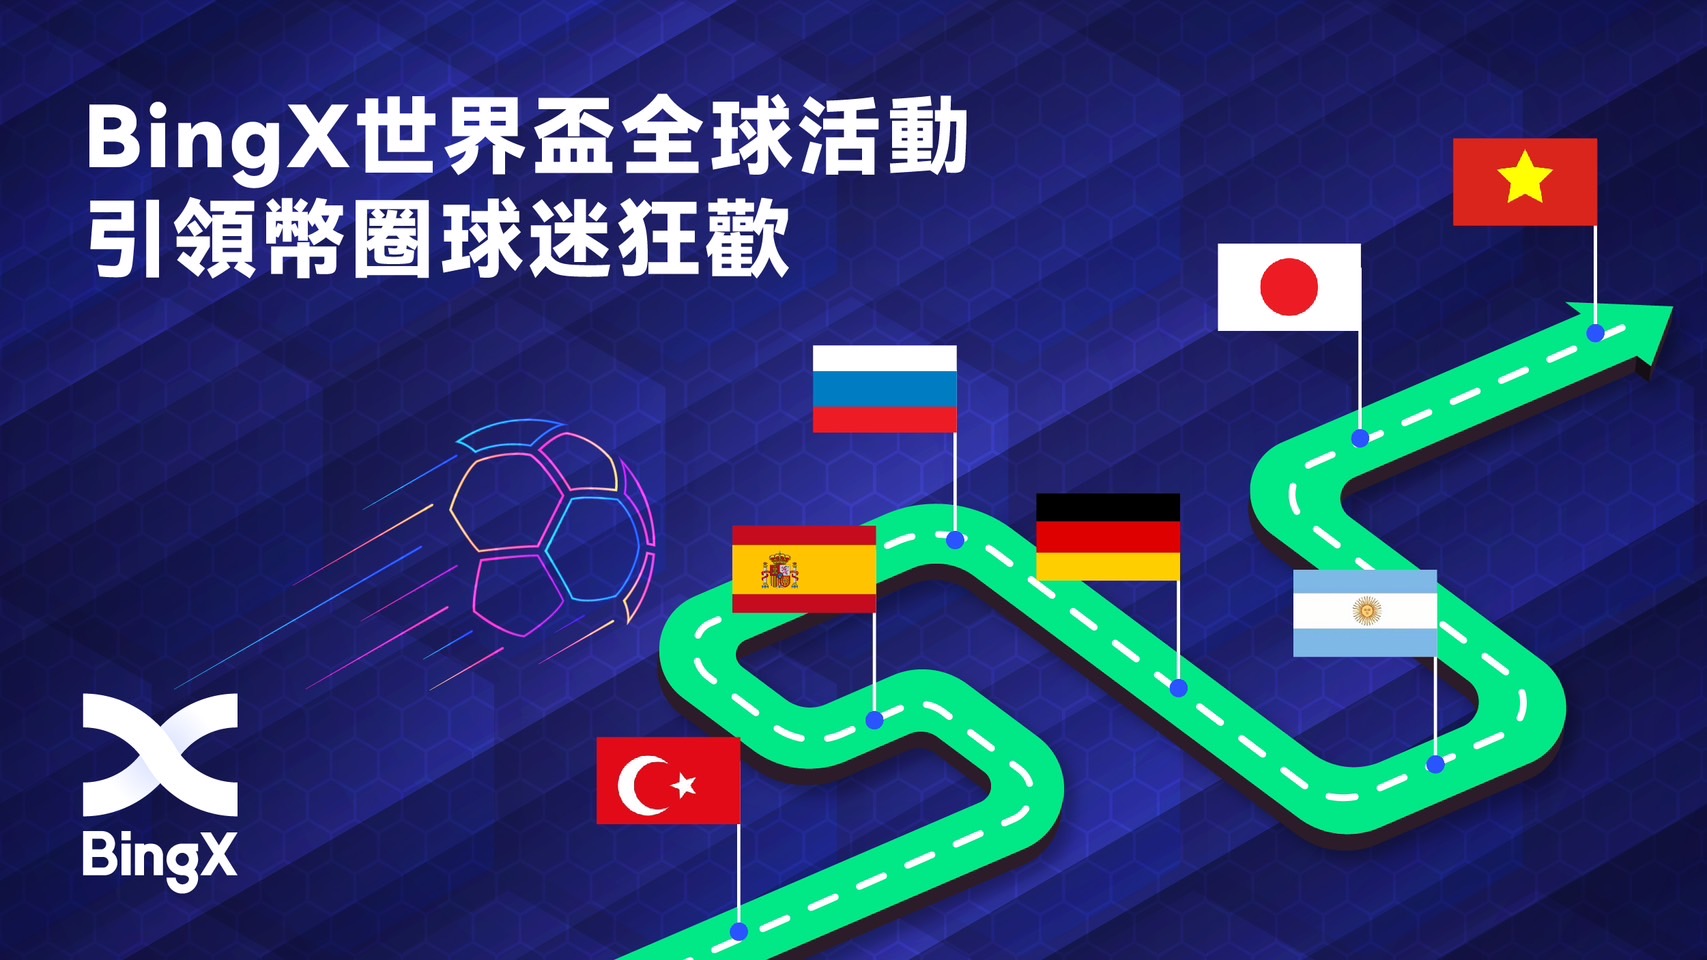 BingX 舉辦全球性世界盃活動 引領幣圈球迷狂歡